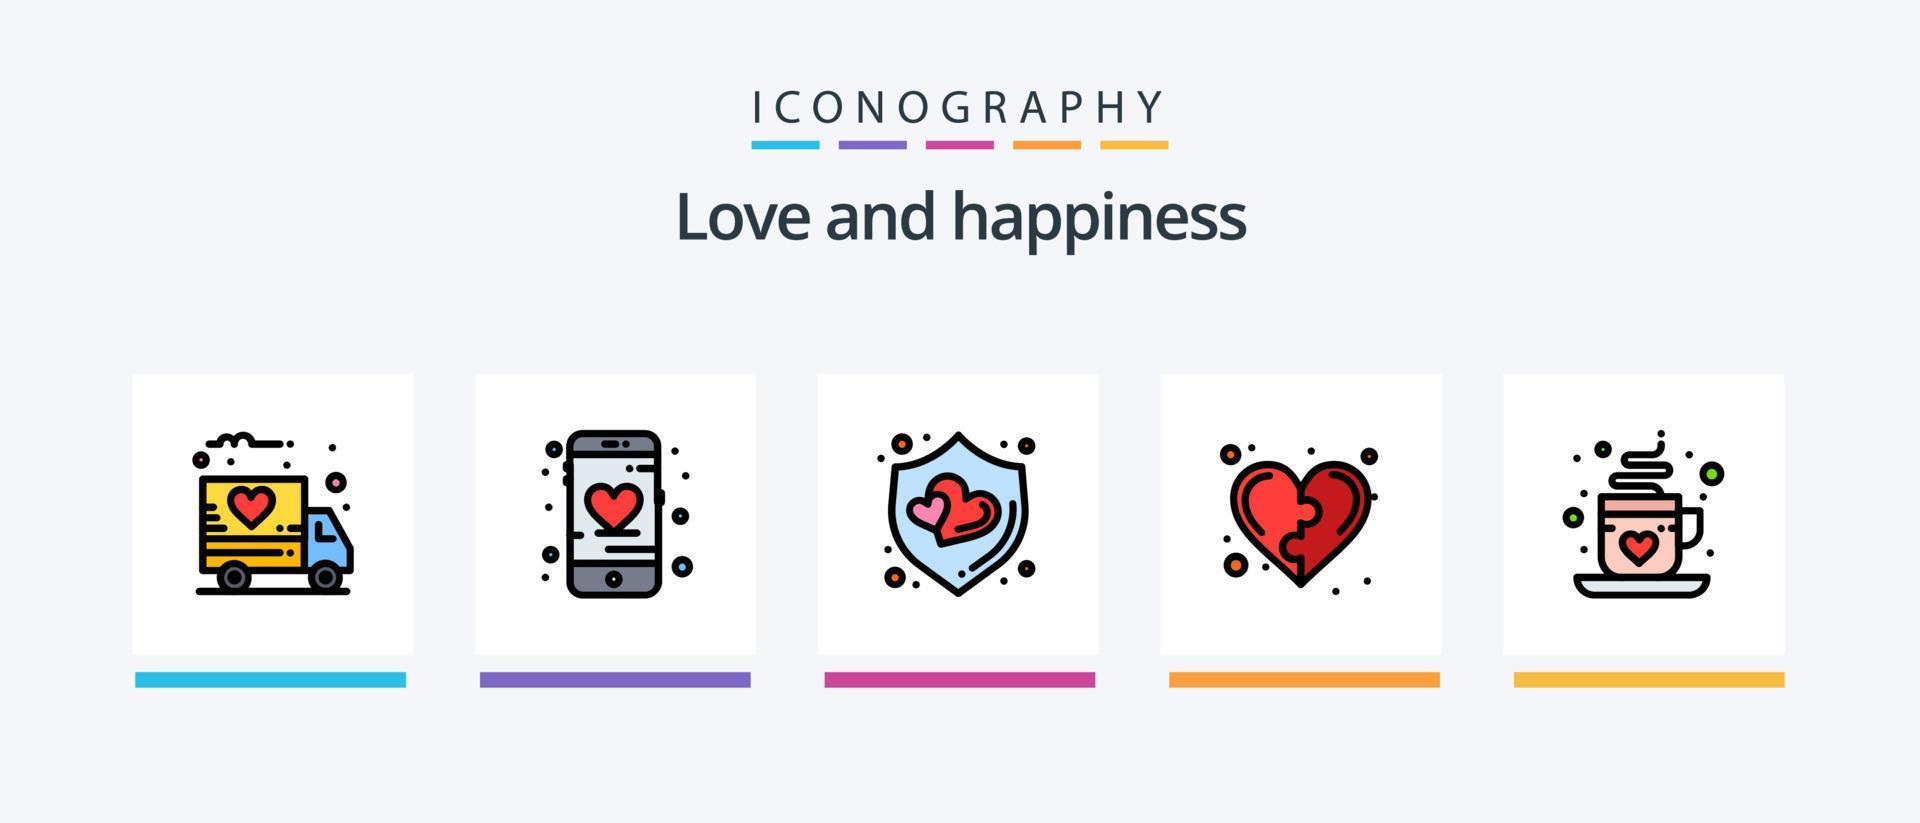 la línea de amor llenó el paquete de 5 íconos que incluye el corazón. la vida. charla de amor corazón. juego. diseño de iconos creativos vector